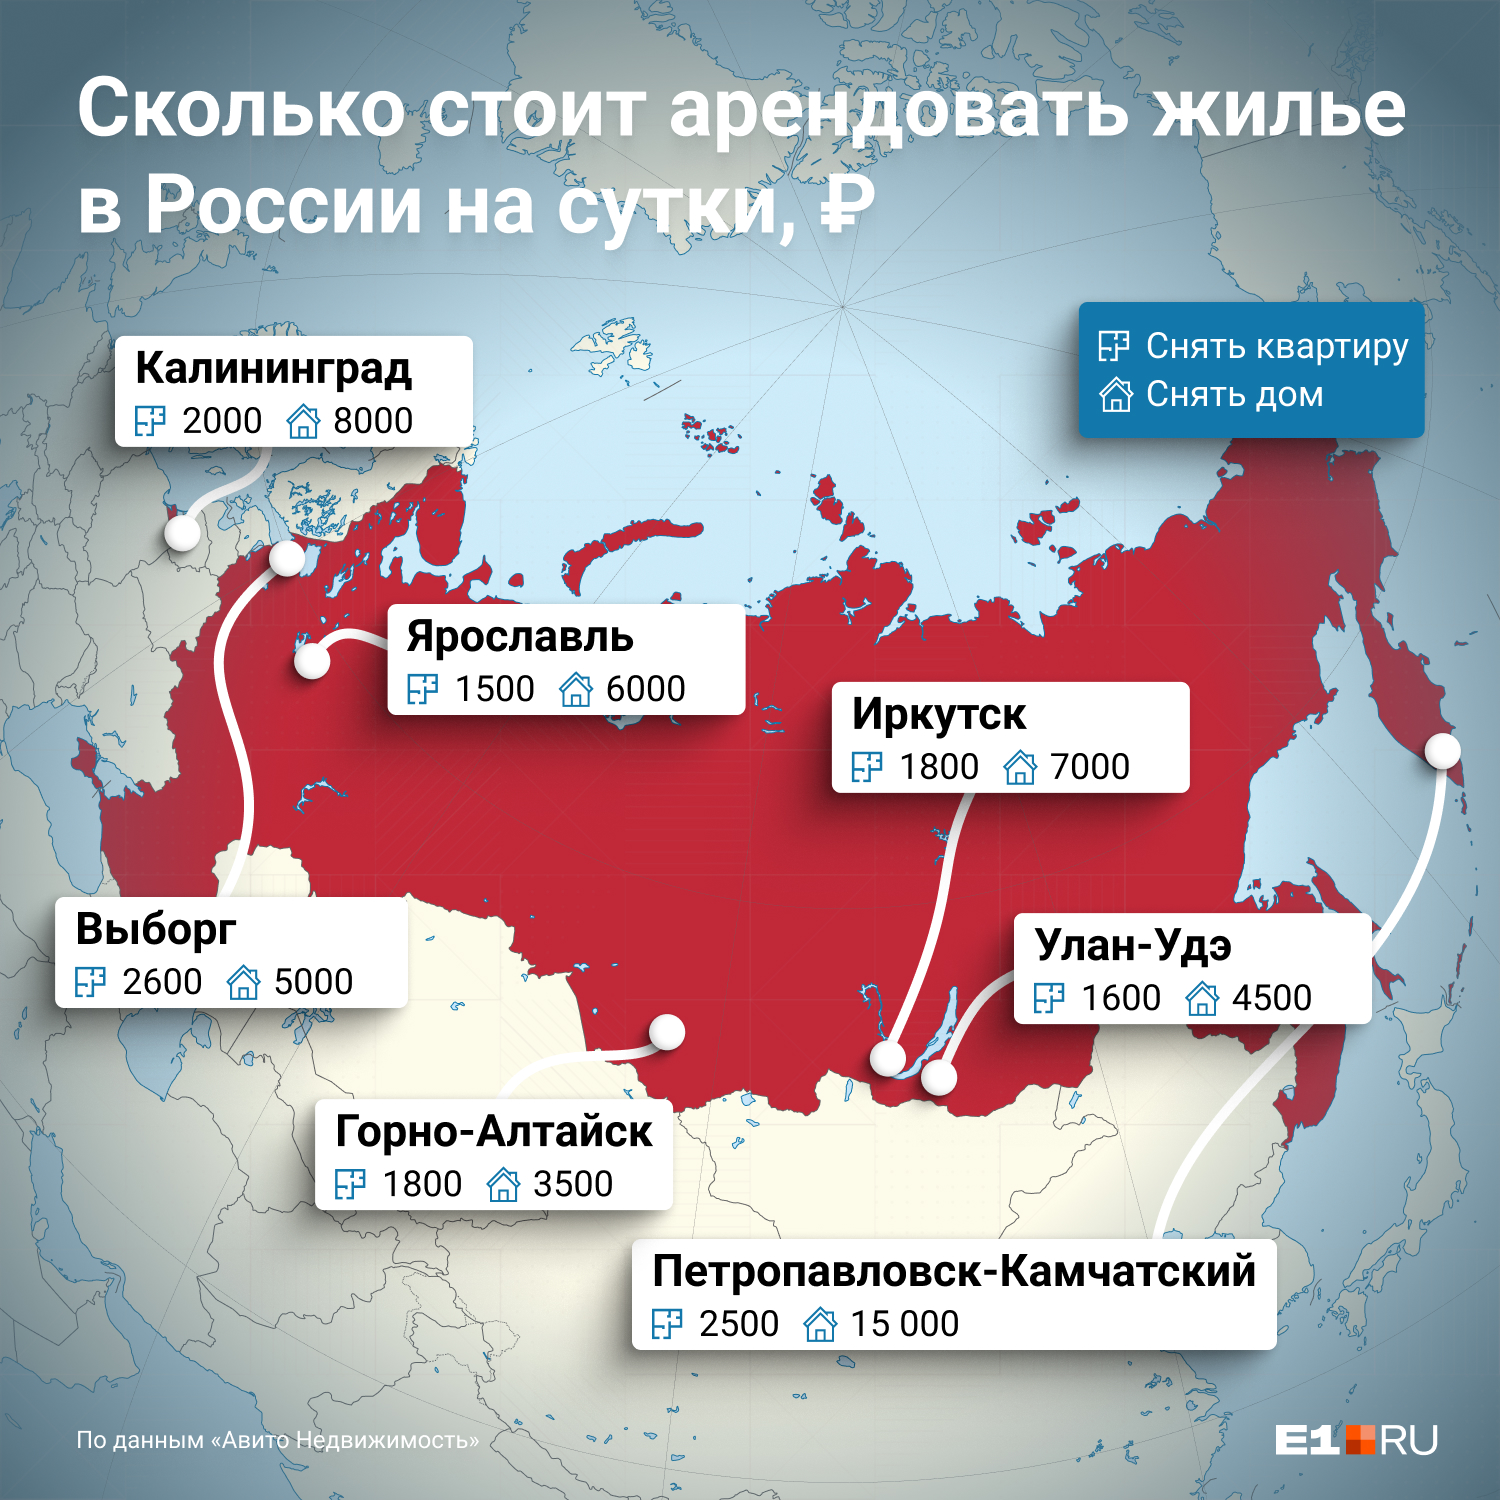 Посмотрите, сколько стоит арендовать на сутки дома и квартиры в разных туристических городах России